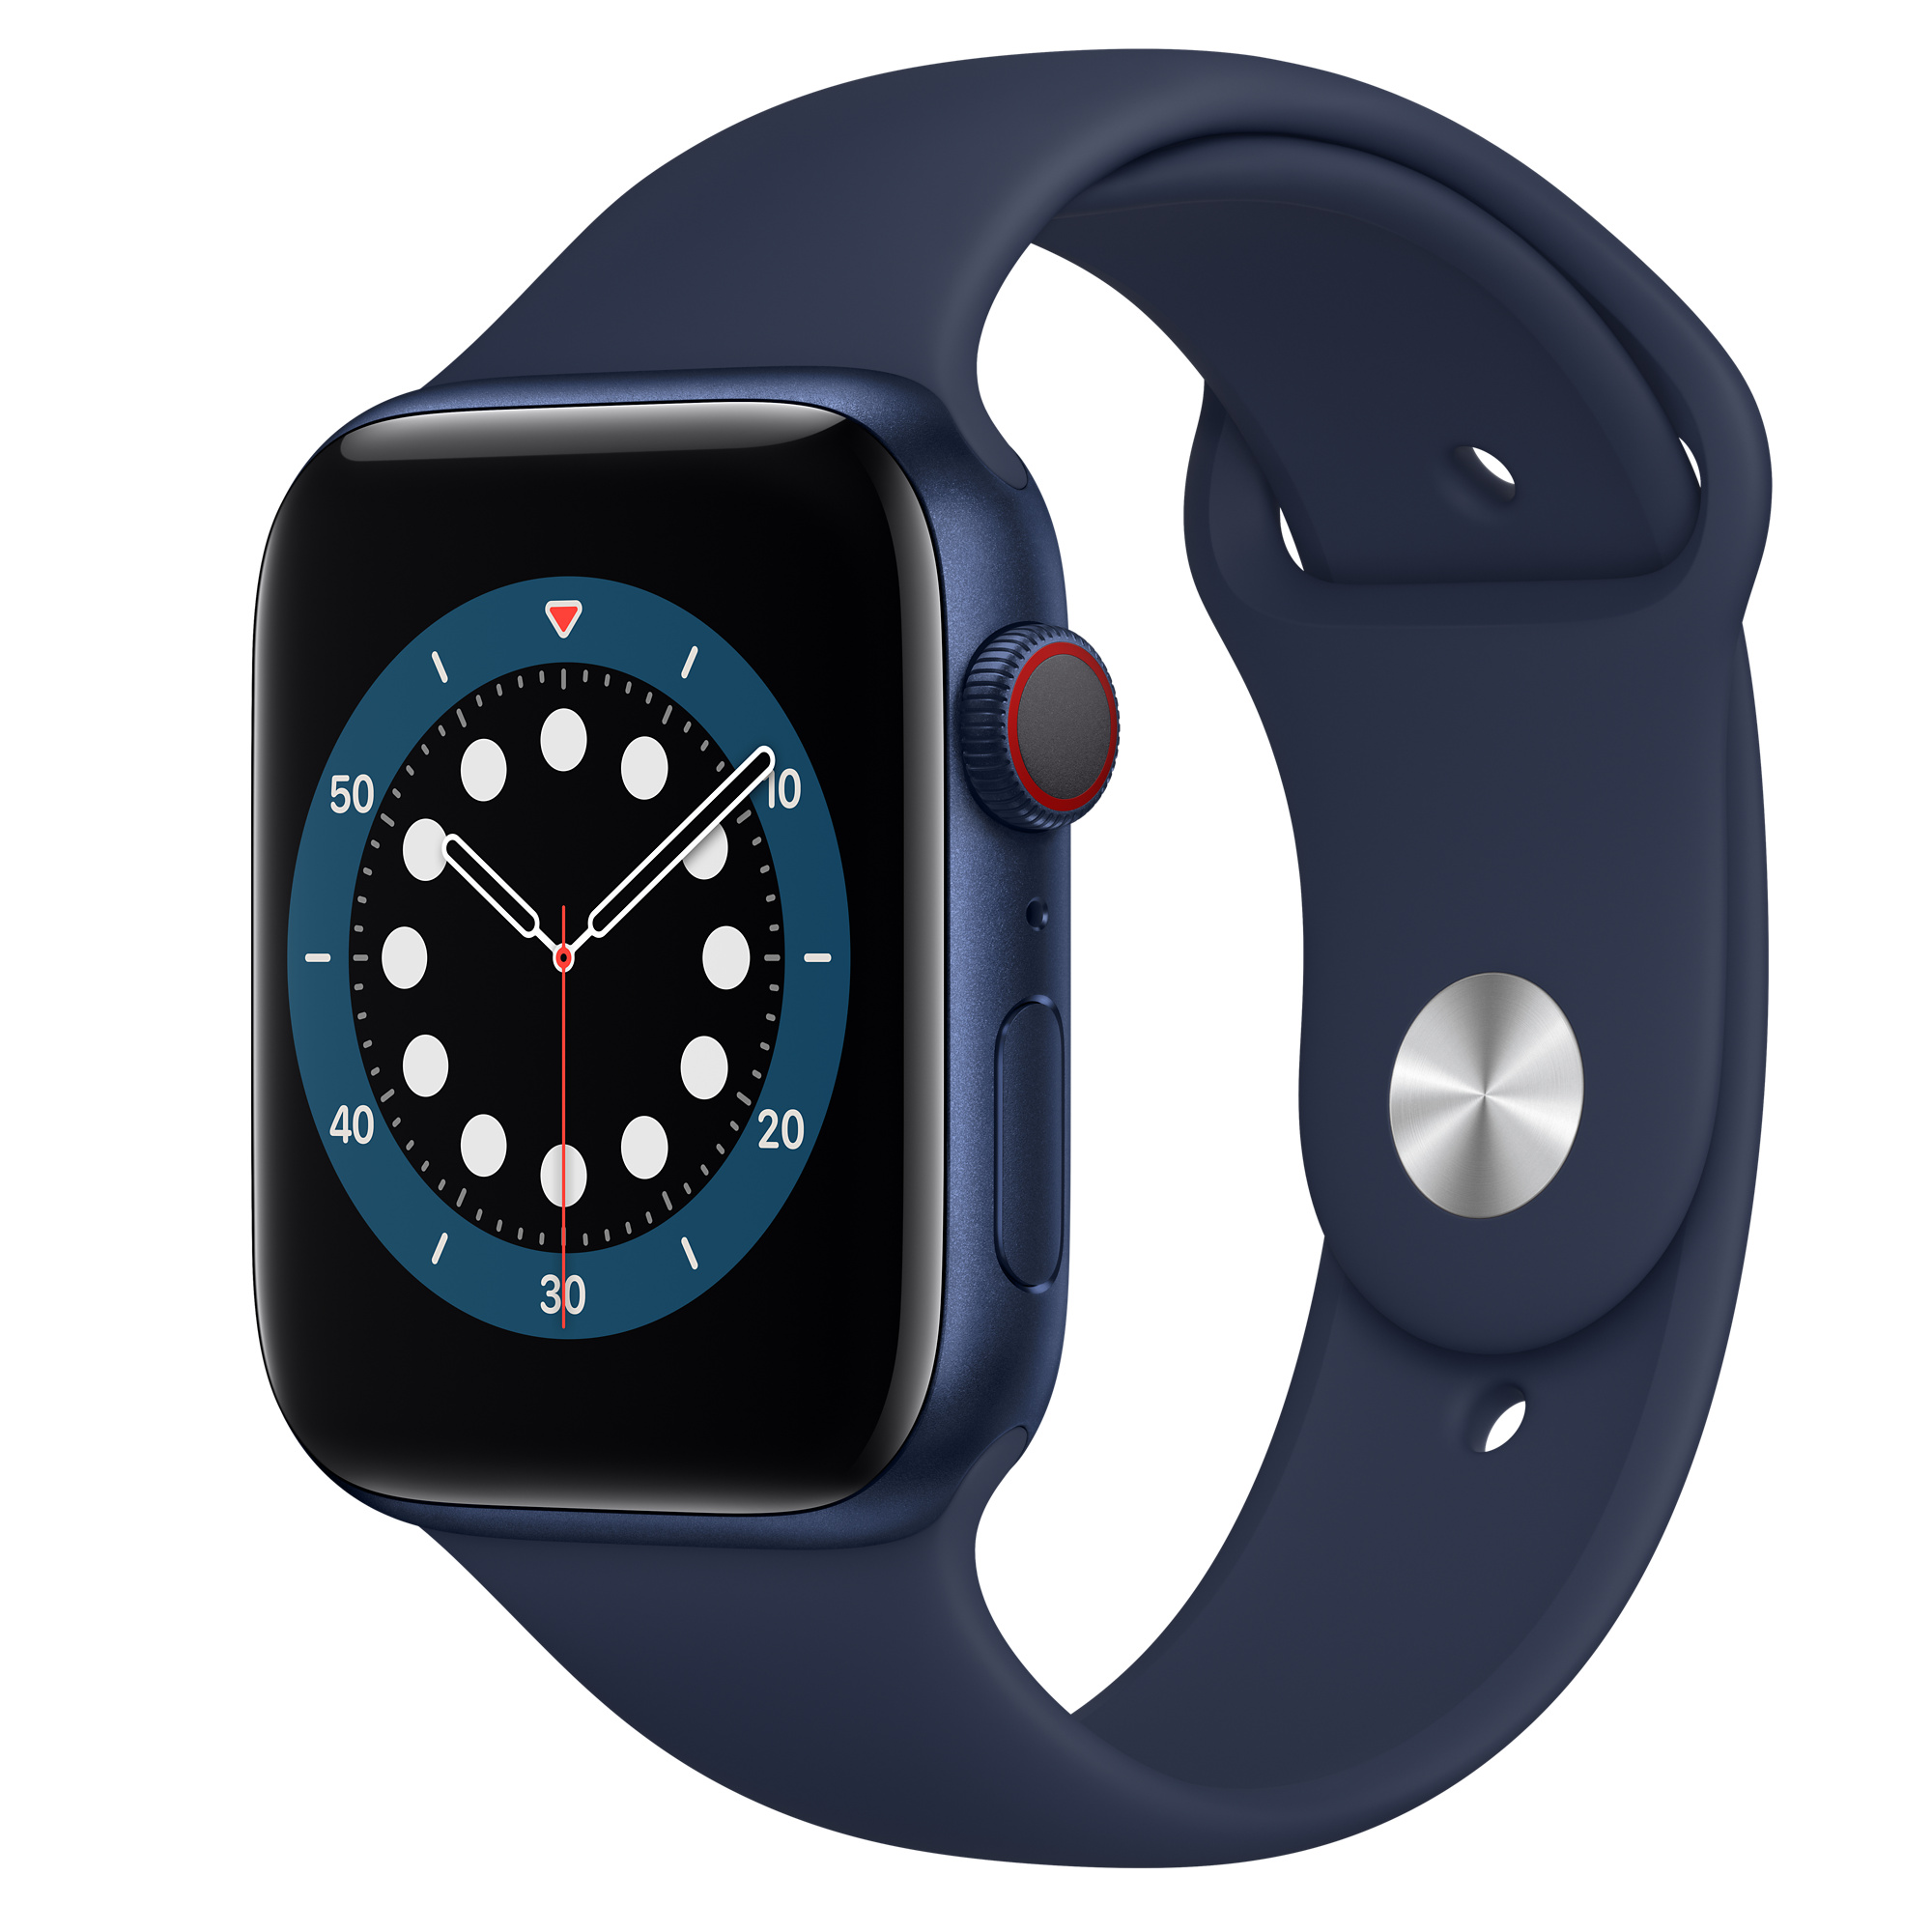 waterproof smartwatch - Apple Watch Series 6